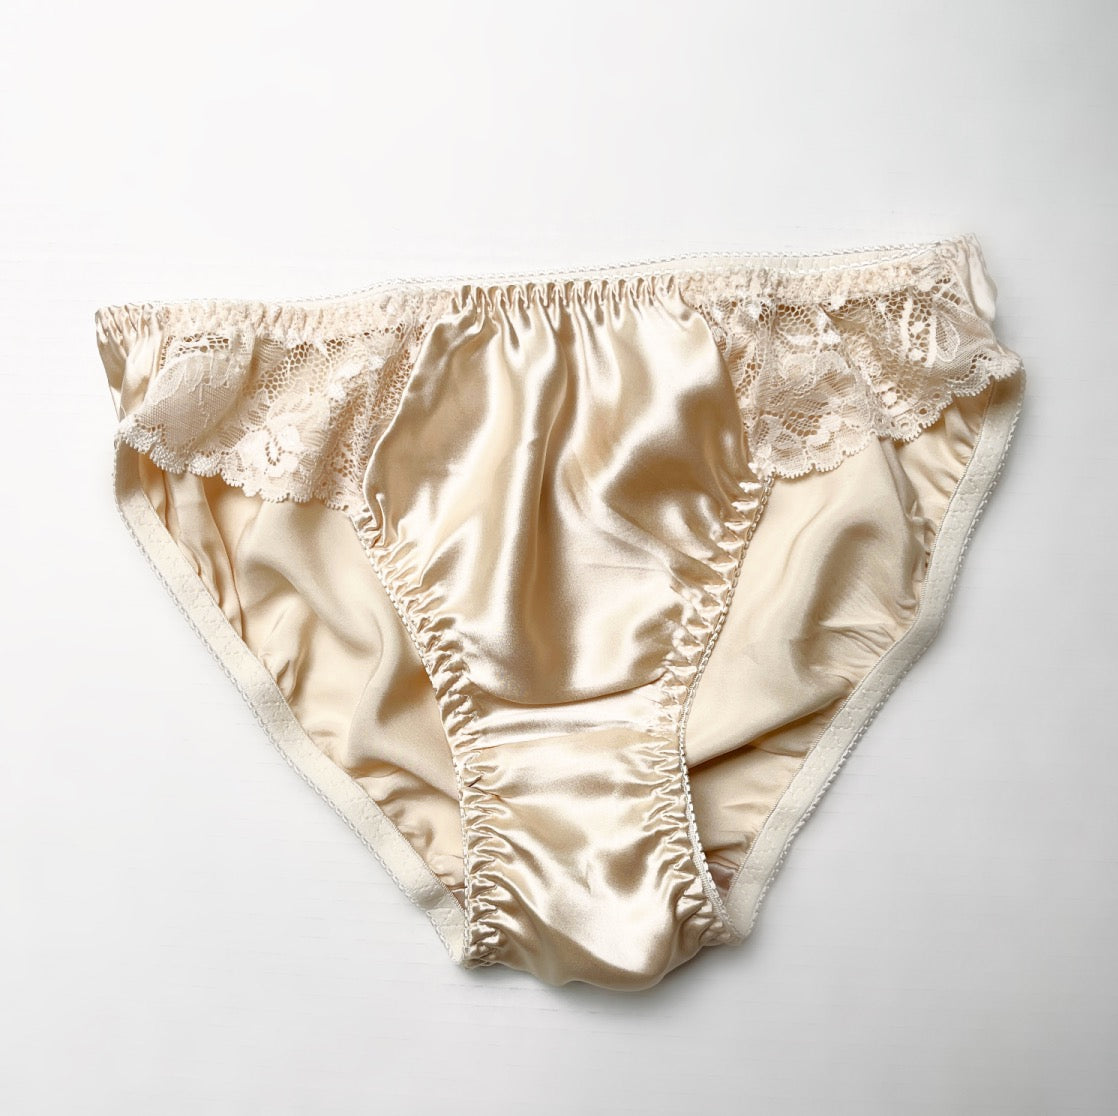 Silk lace underwear brief for women  Made in Canada women's underwear –  econica